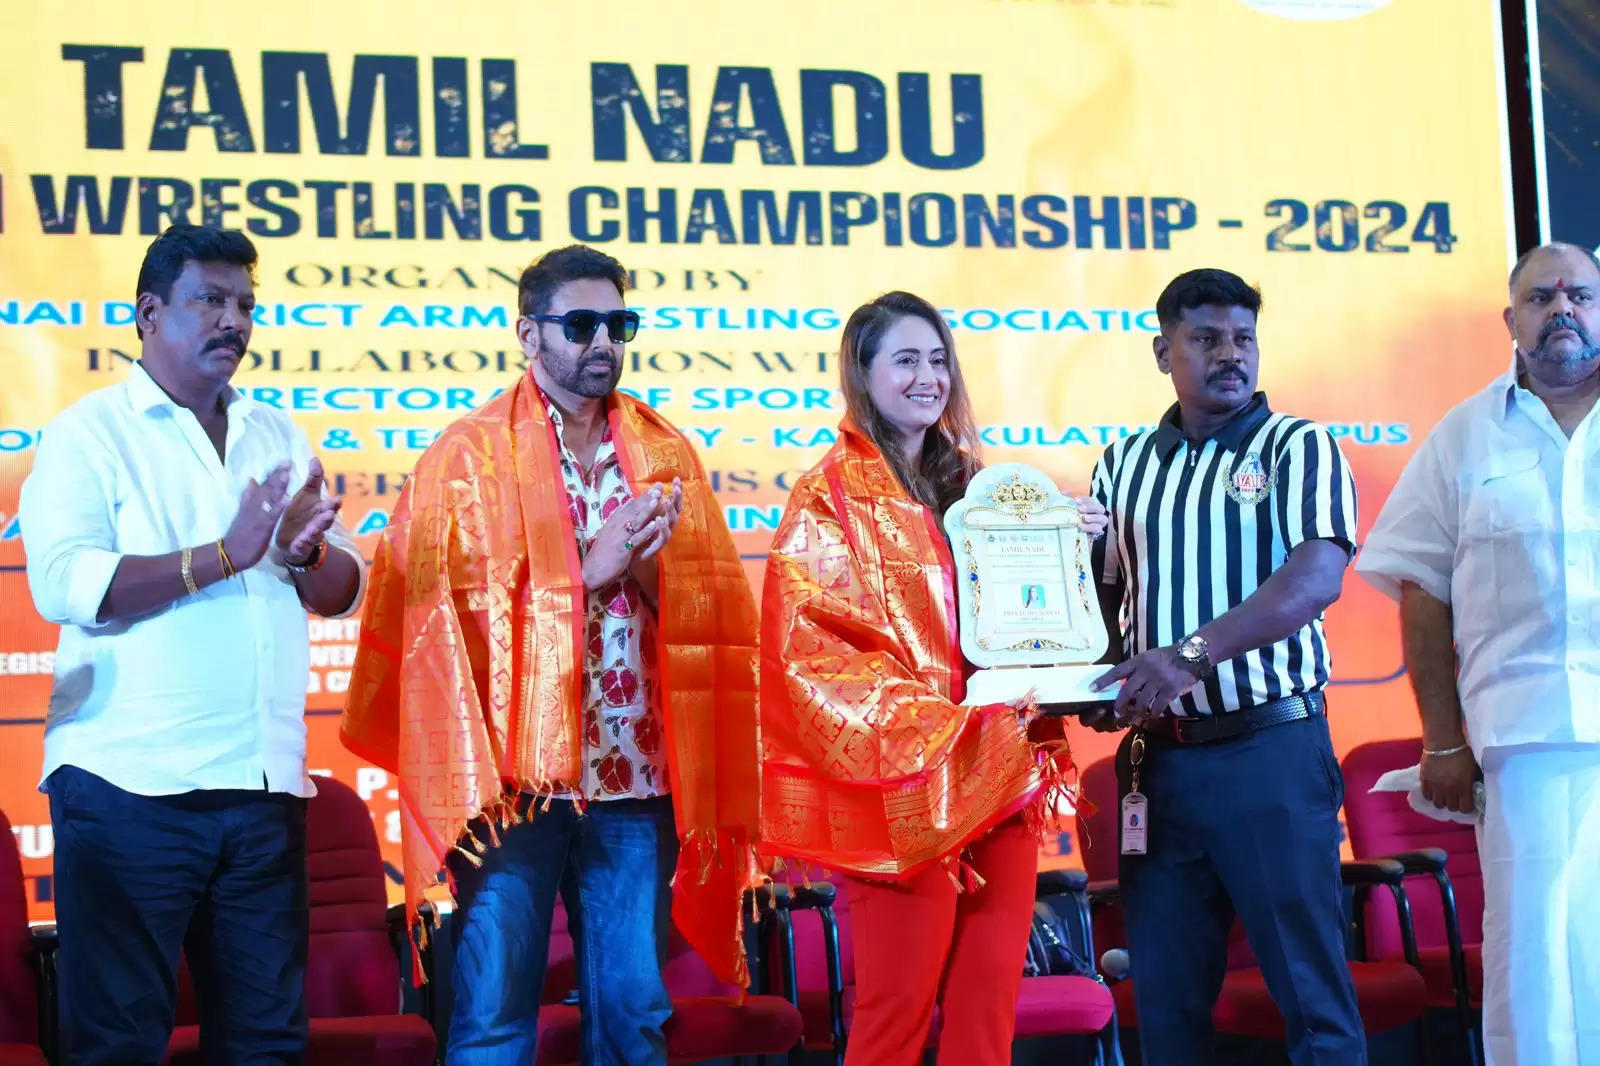 तमिलनाडु स्टेट आर्मरेसलिंग चैंपियनशिप 2024 में परवीन डबास ने विशेष अतिथि के रूप में टेबल का उद्घाटन किया